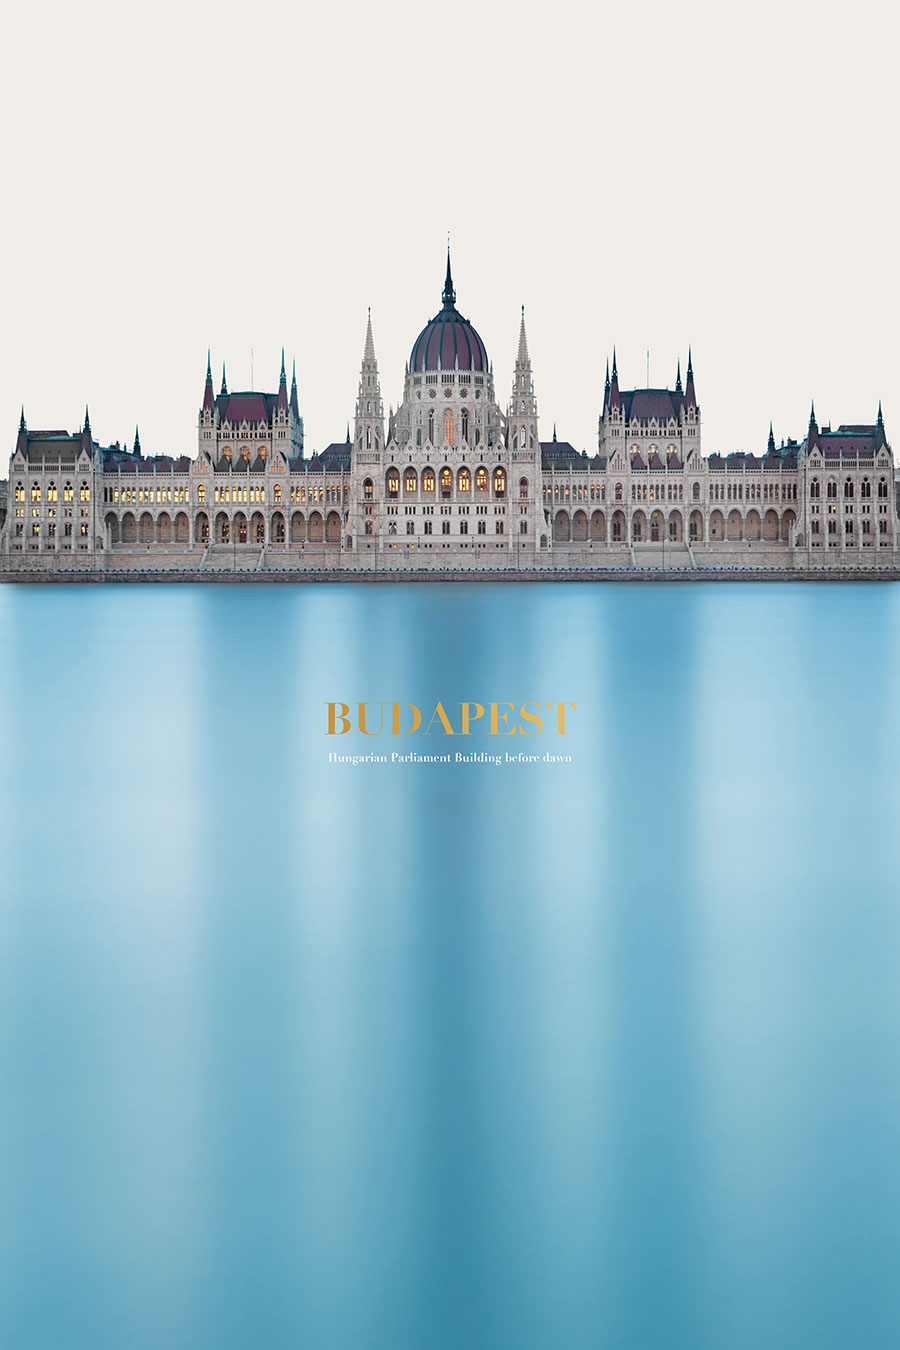 冰雪之颠:匈牙利议会大厦摄影图片欣赏